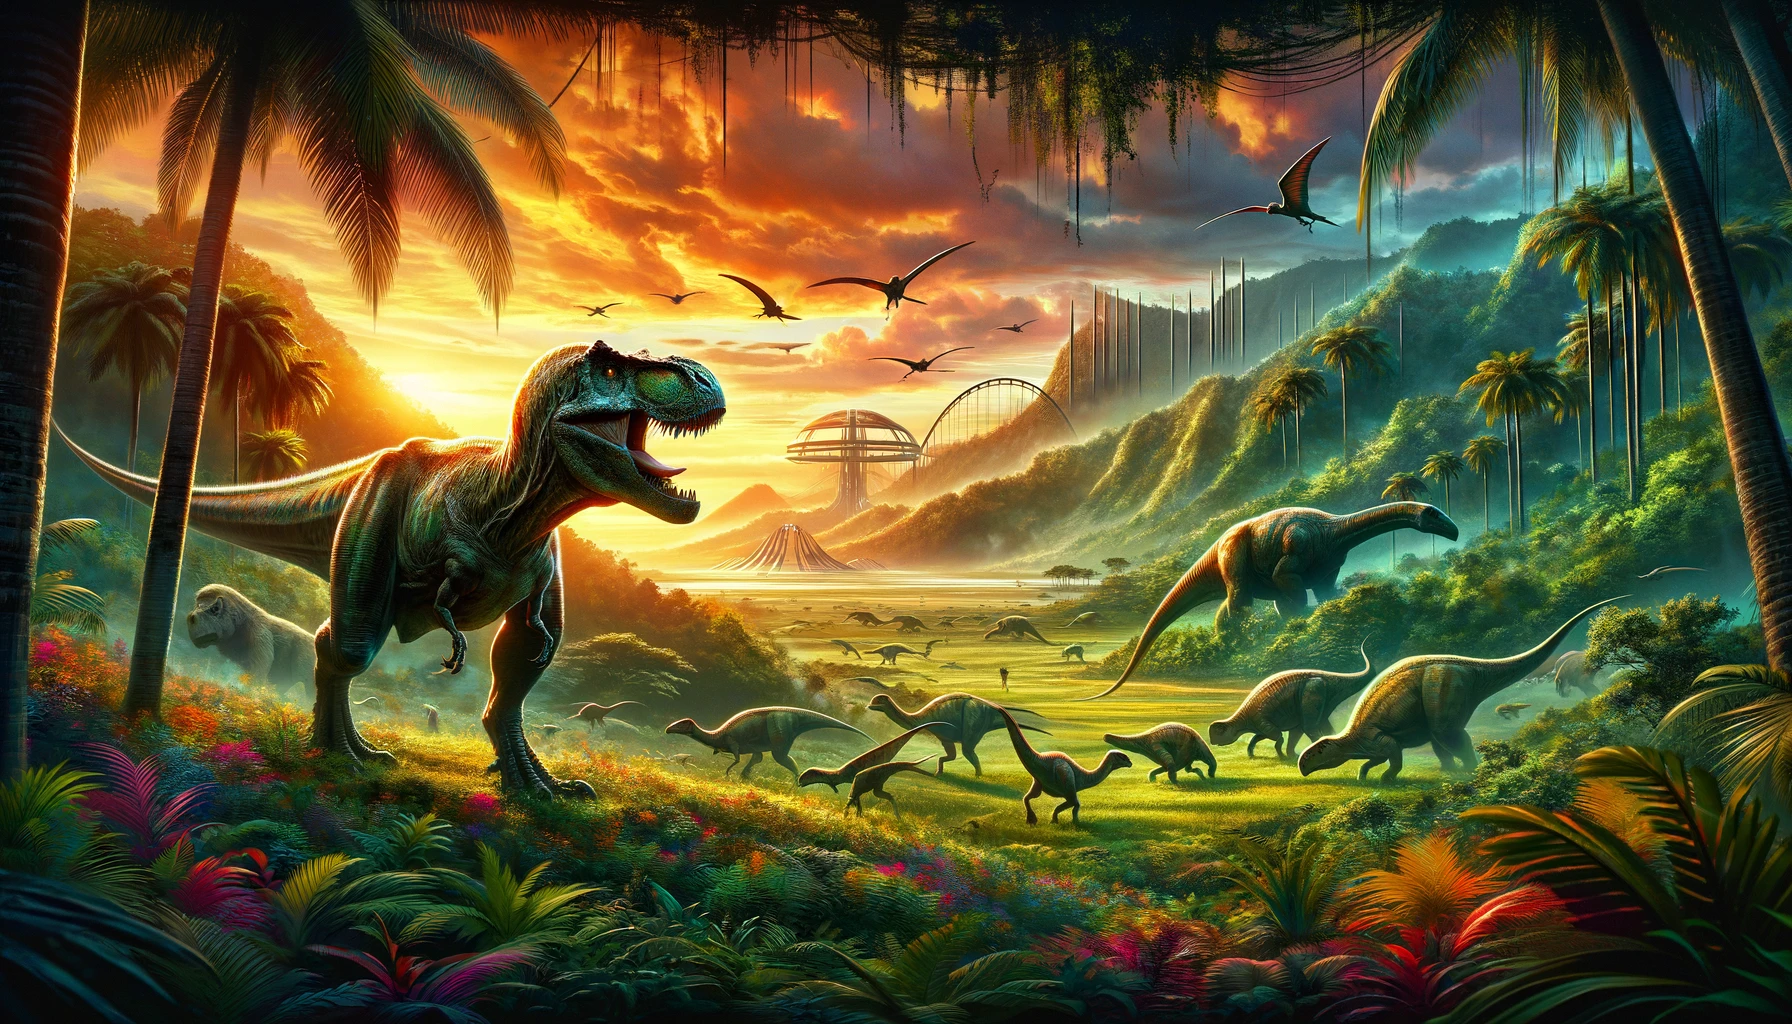  Următorul Film din Seria Jurassic World Programat pentru Lansare în Iulie 2025